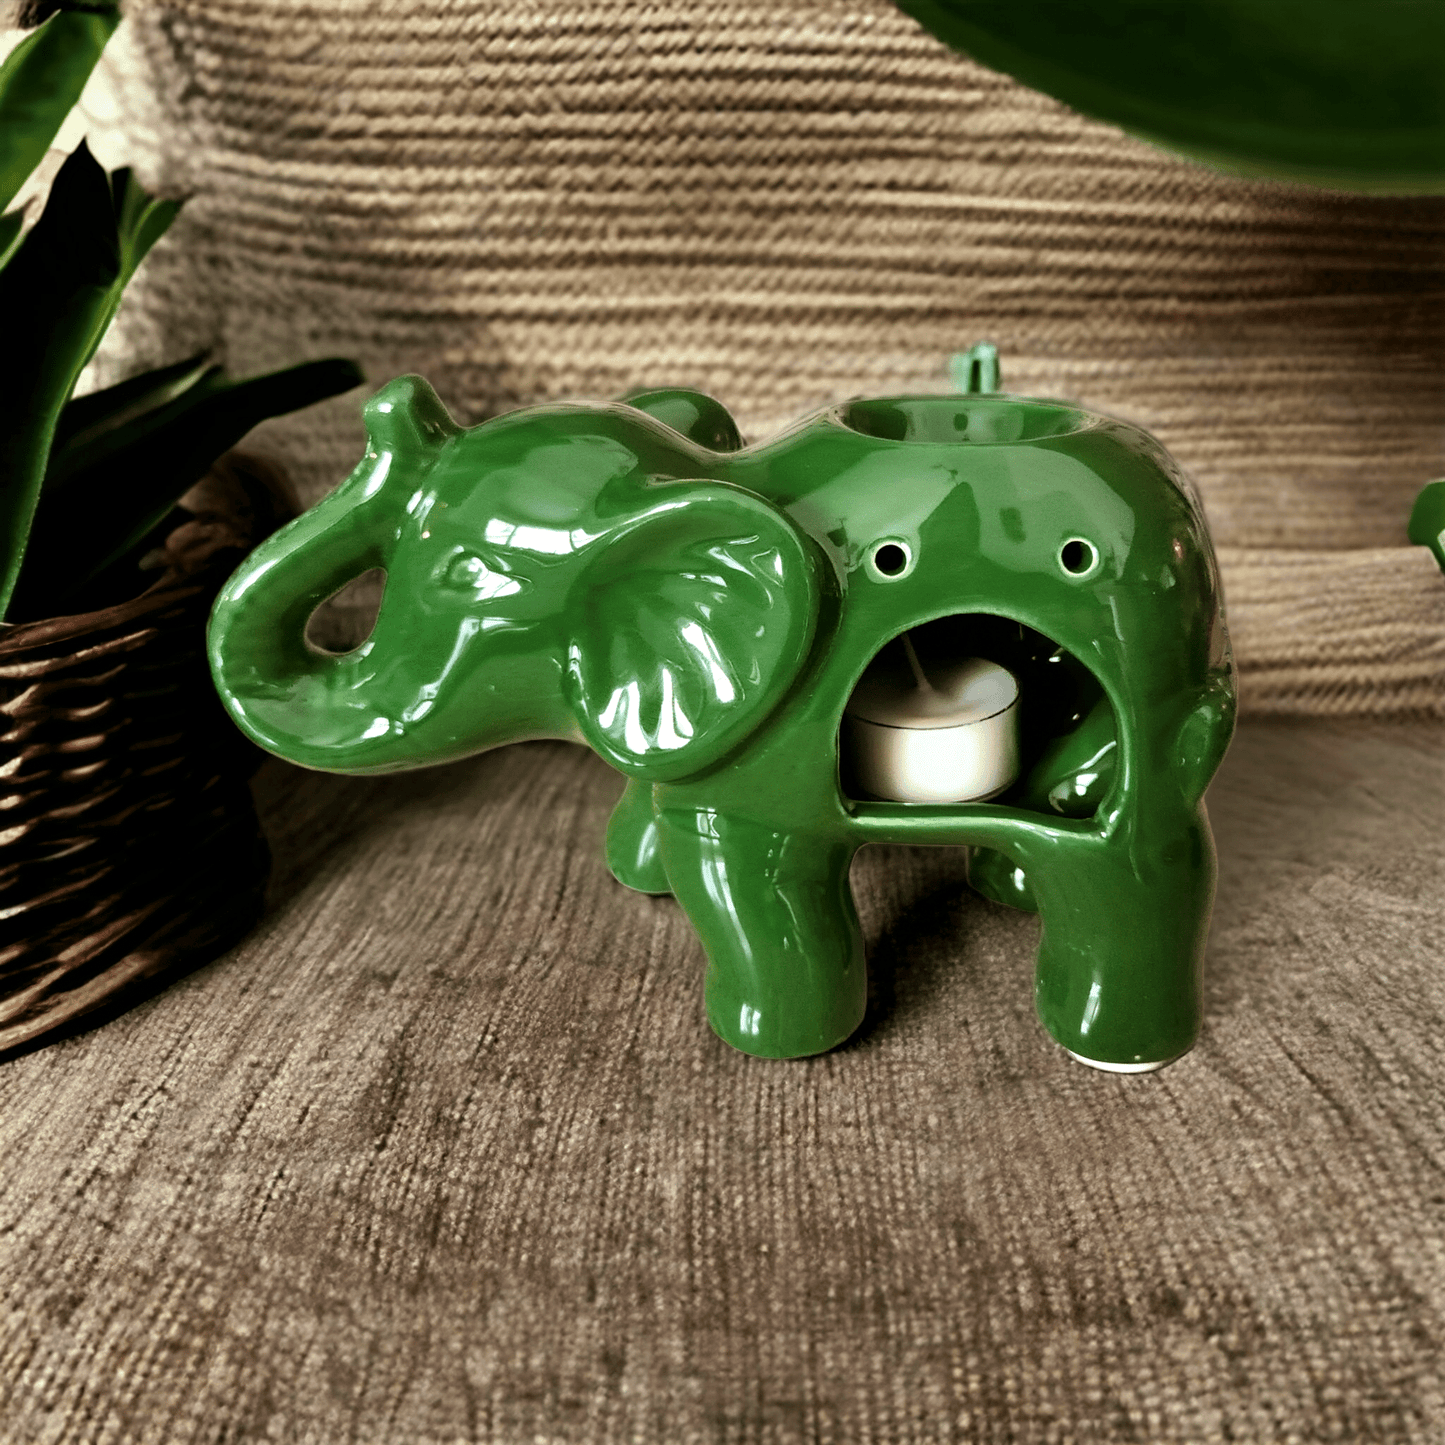 Elephant Ceramic Wax Melter - Green - WaxettyElephant Ceramic Wax Melter - GreenWax Warmer